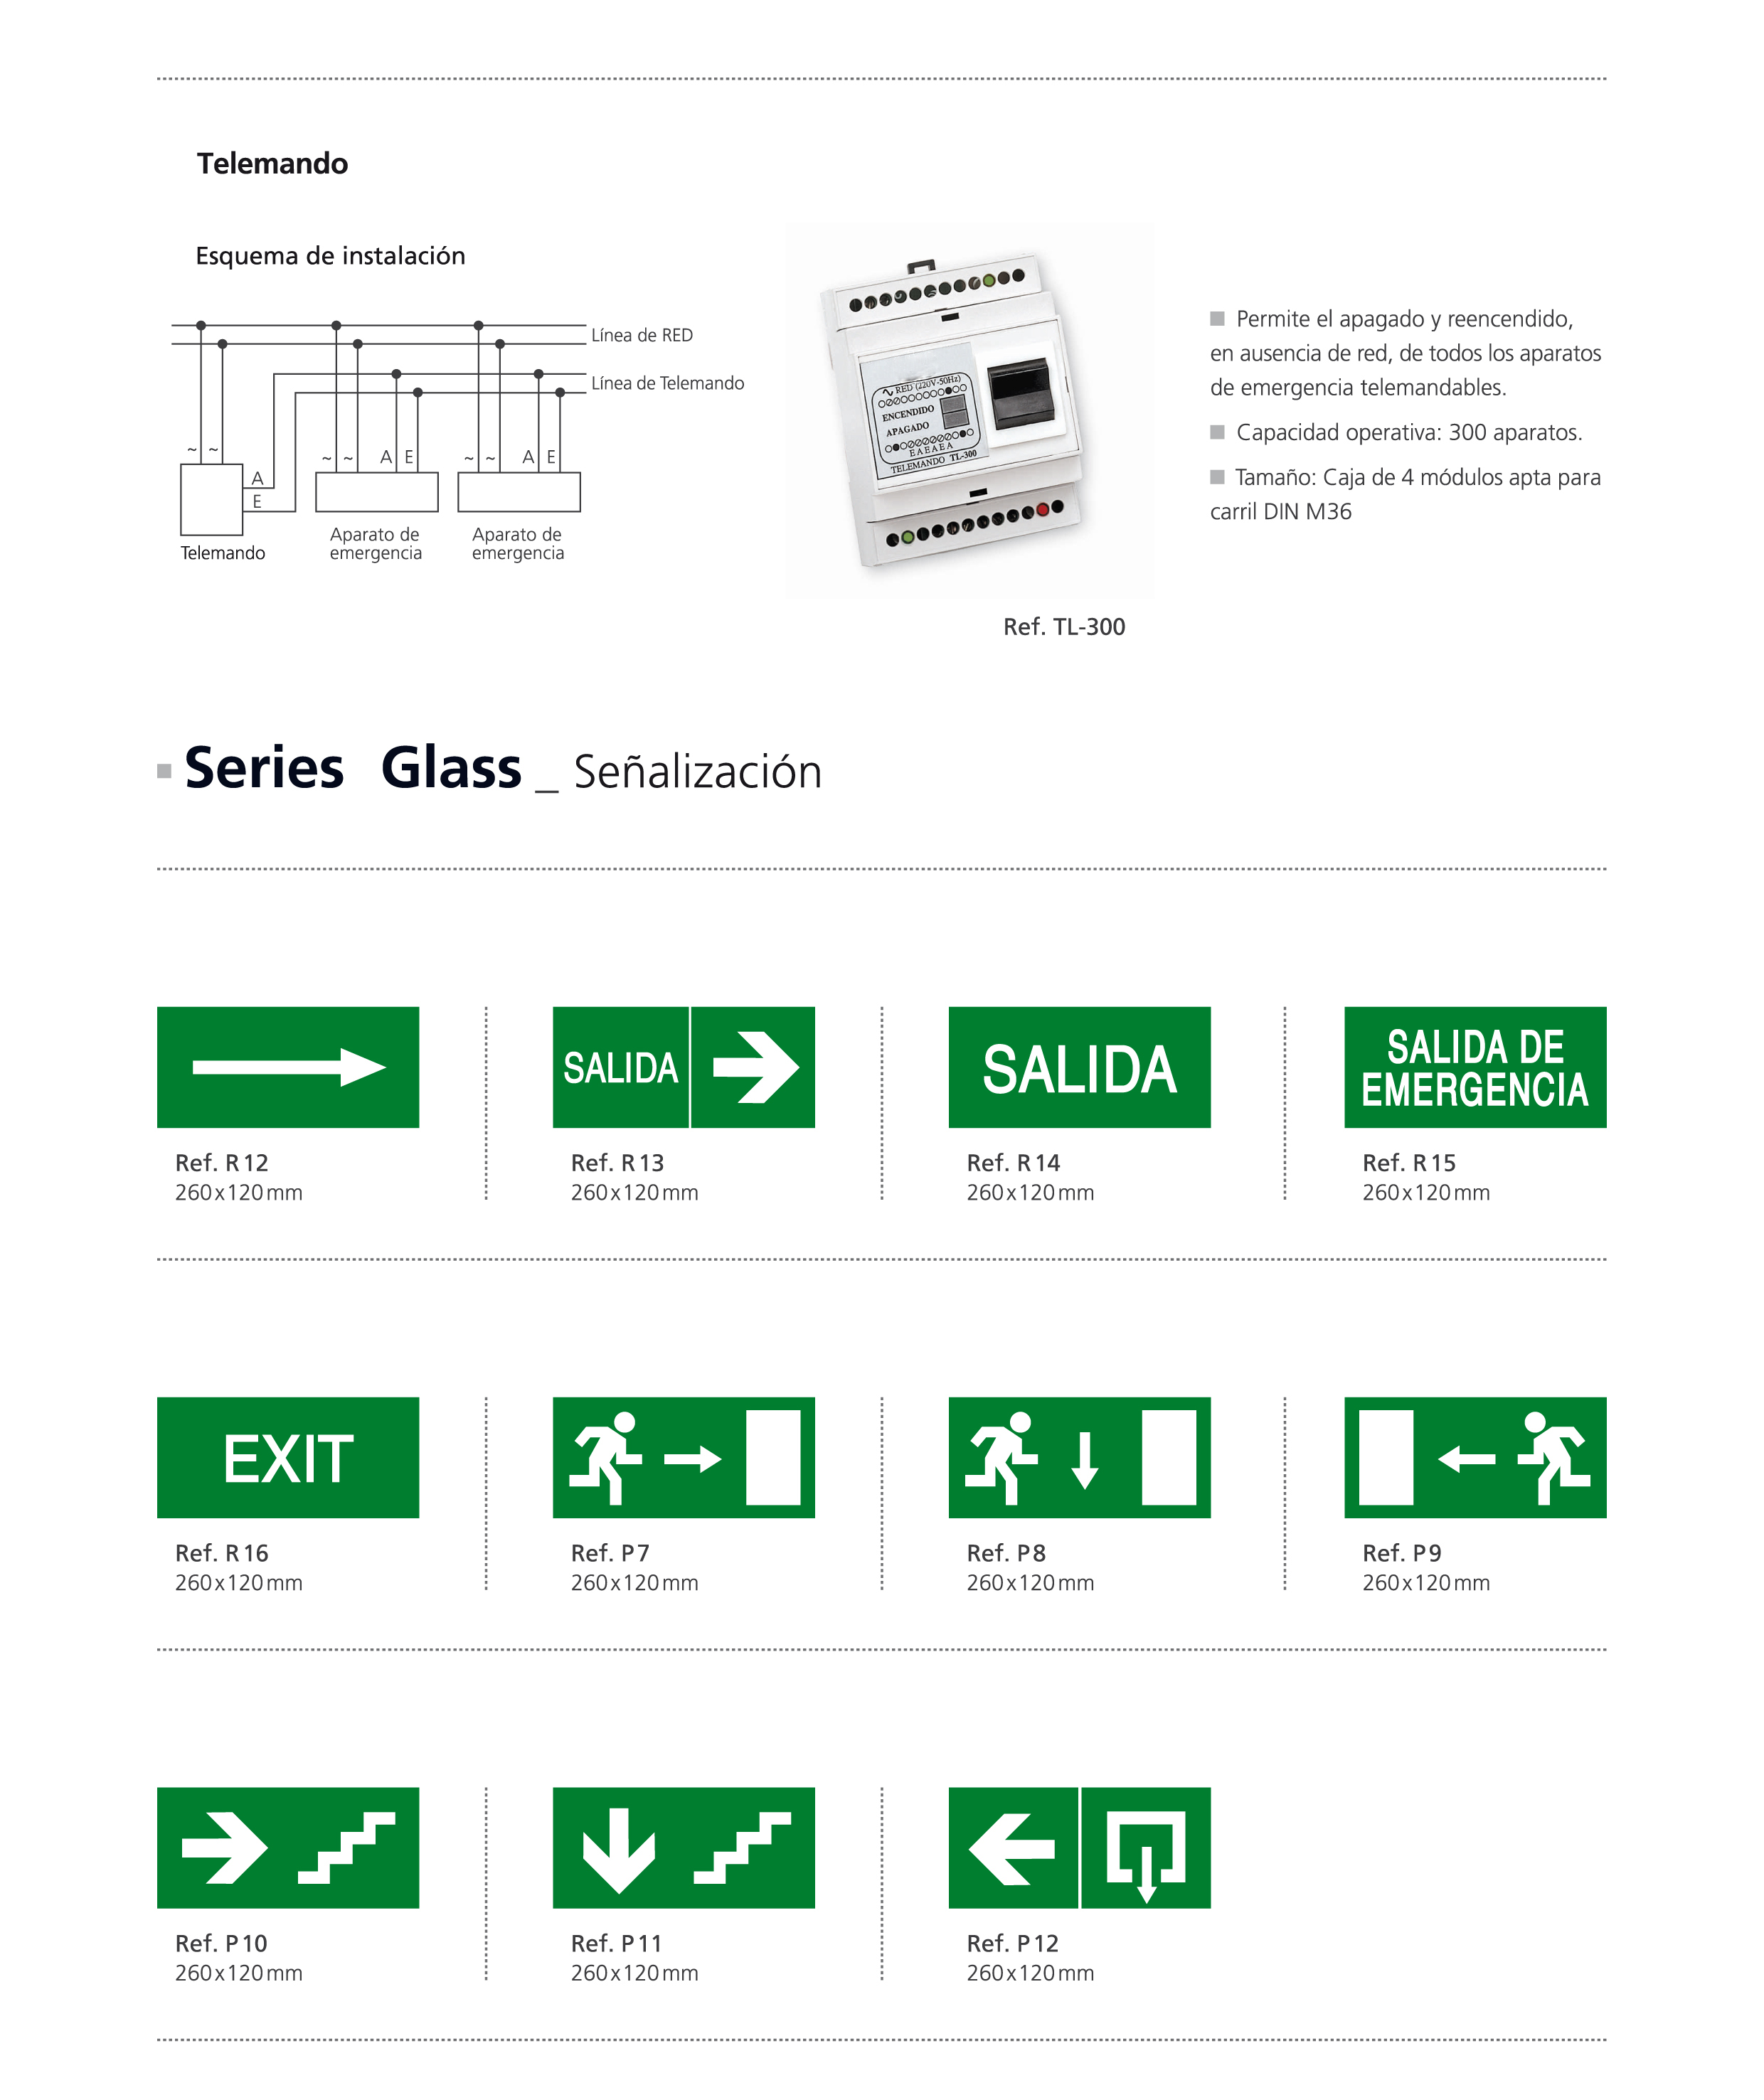 Emergencias_Serie_Glass_Senalizacion